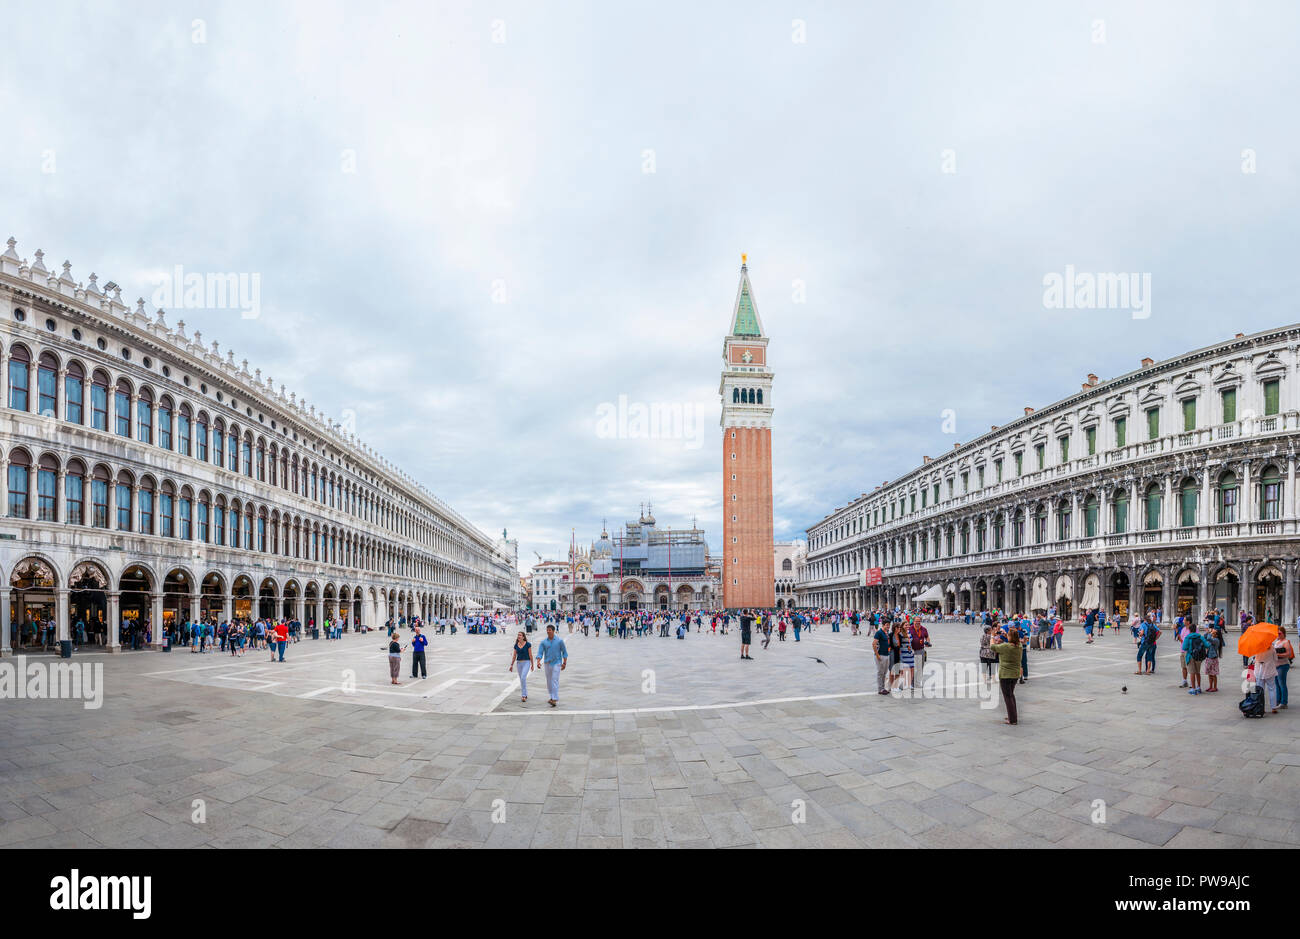 Venedig, Italien, 16. Juni 2014: Super wide angle Panoramablick auf St. Mark's Platz oder die Piazza San Marco, ist die grösste und bedeutendste Platz i Stockfoto